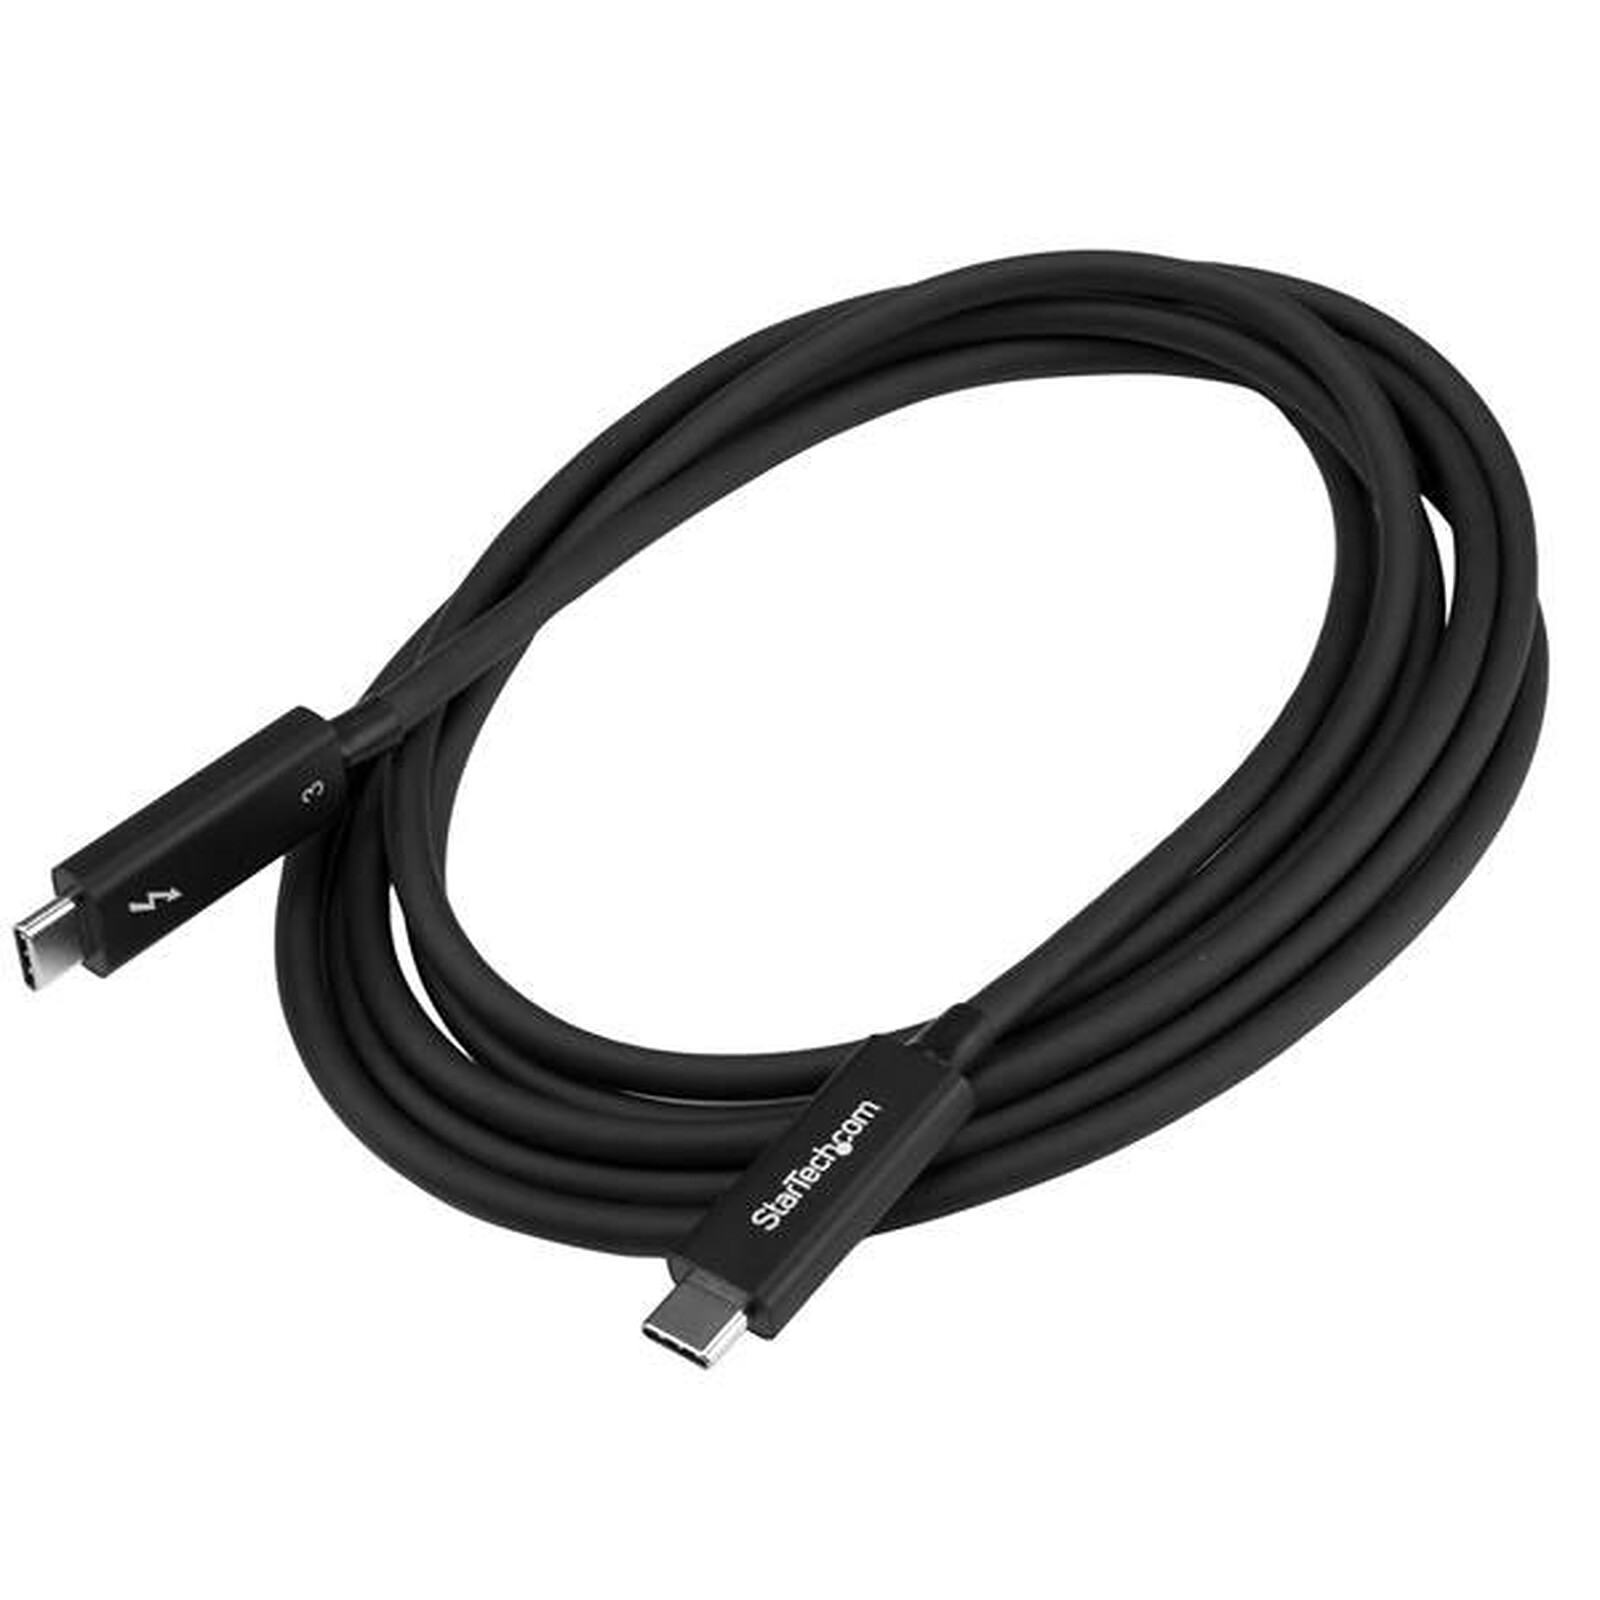 Câble USB 3.0 vers Type C coudé Goobay, longueur 0,50m à 2m, USB-C